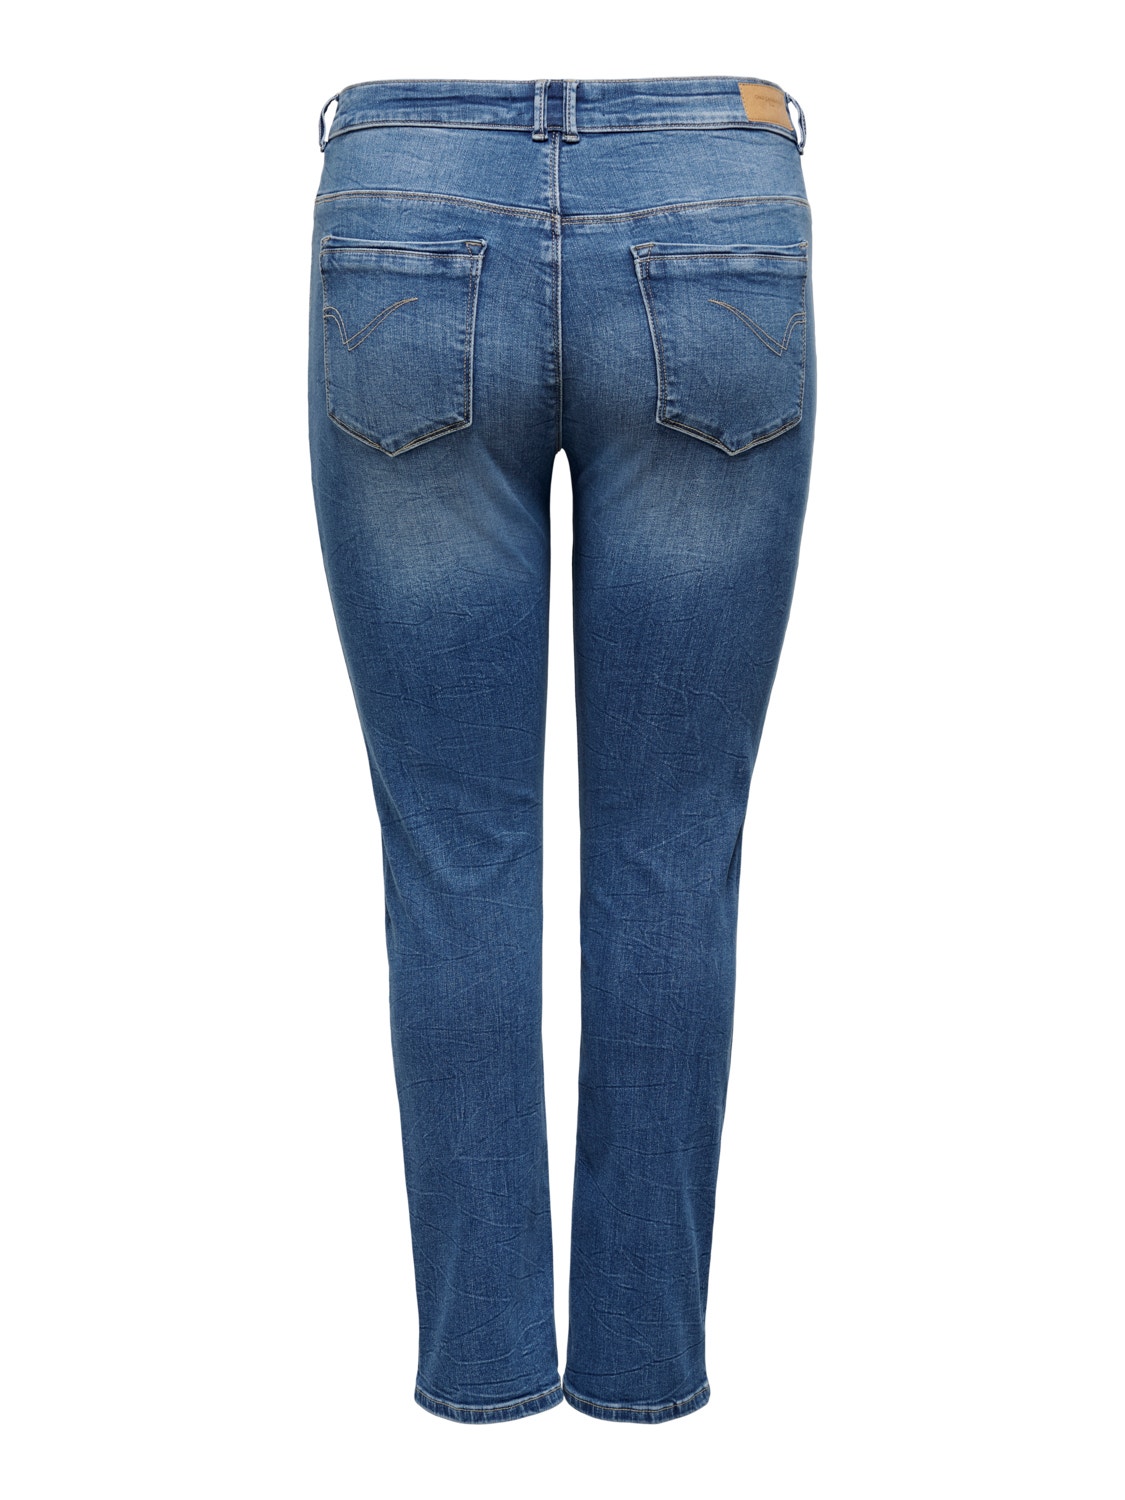 ONLY CARLaola high waist jeans -Light Blue Denim - 15245694